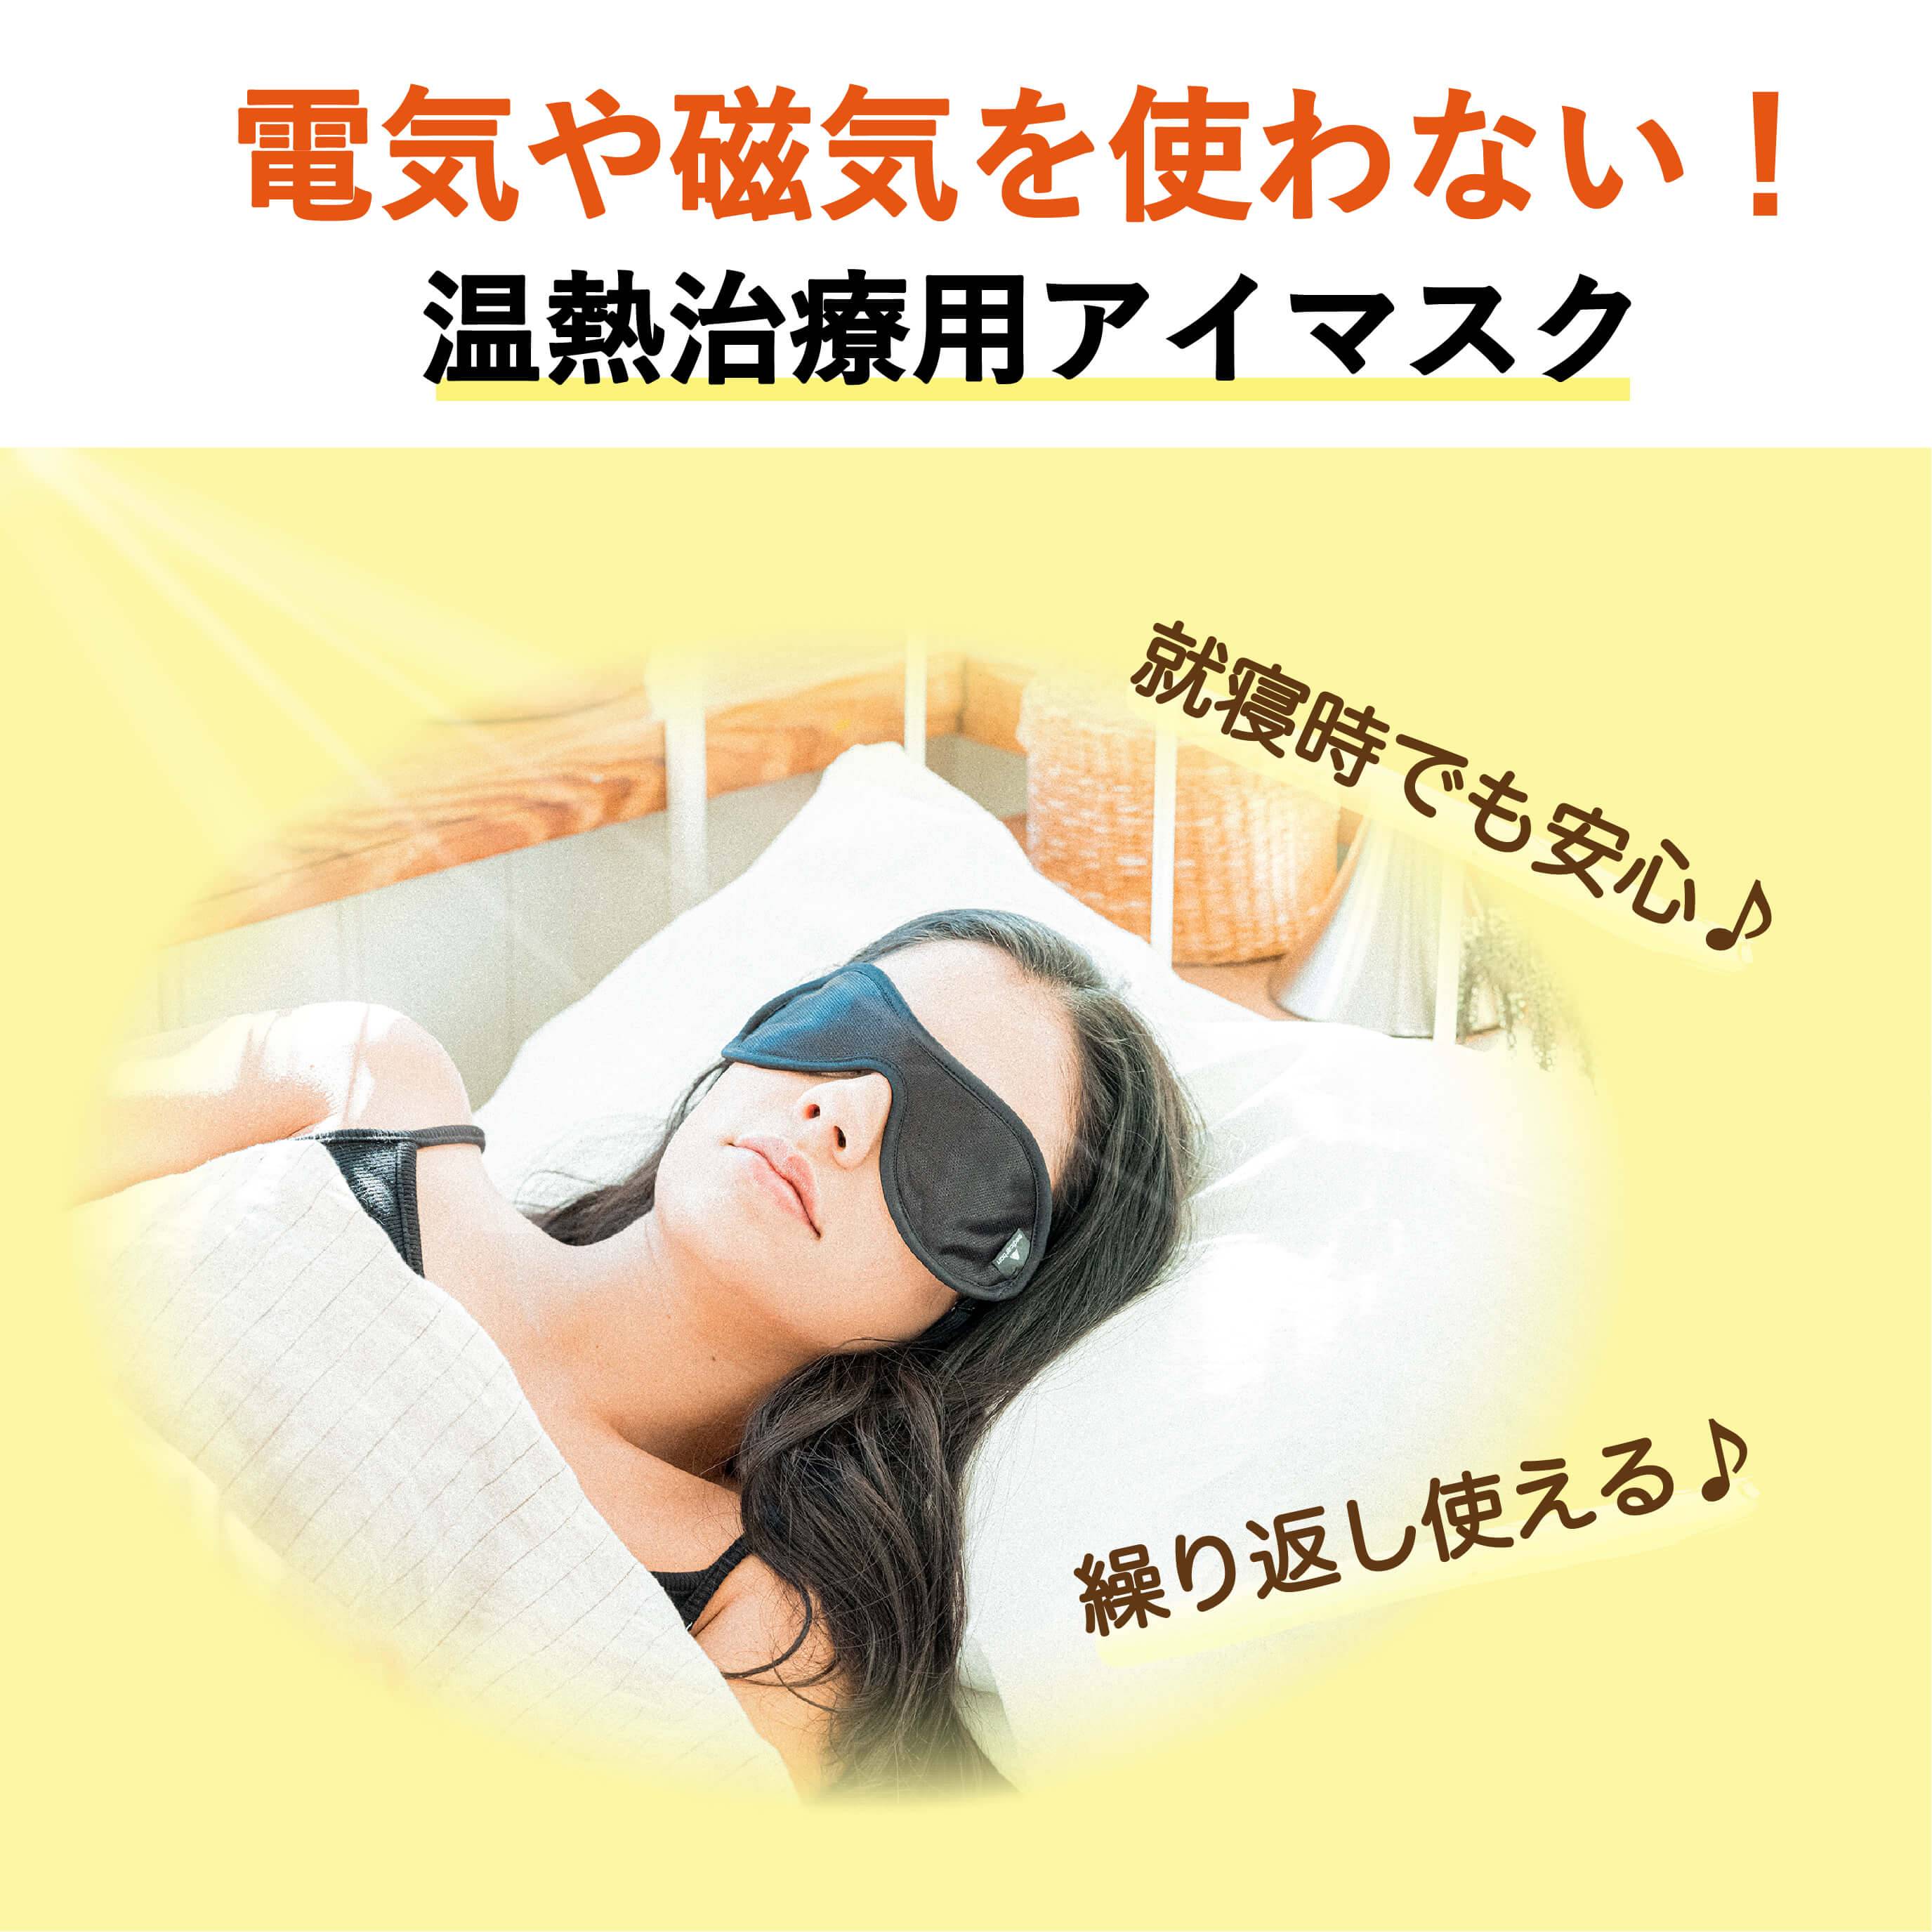 電気や磁気を使わない温熱治療用アイマスクを就寝時にしている女性